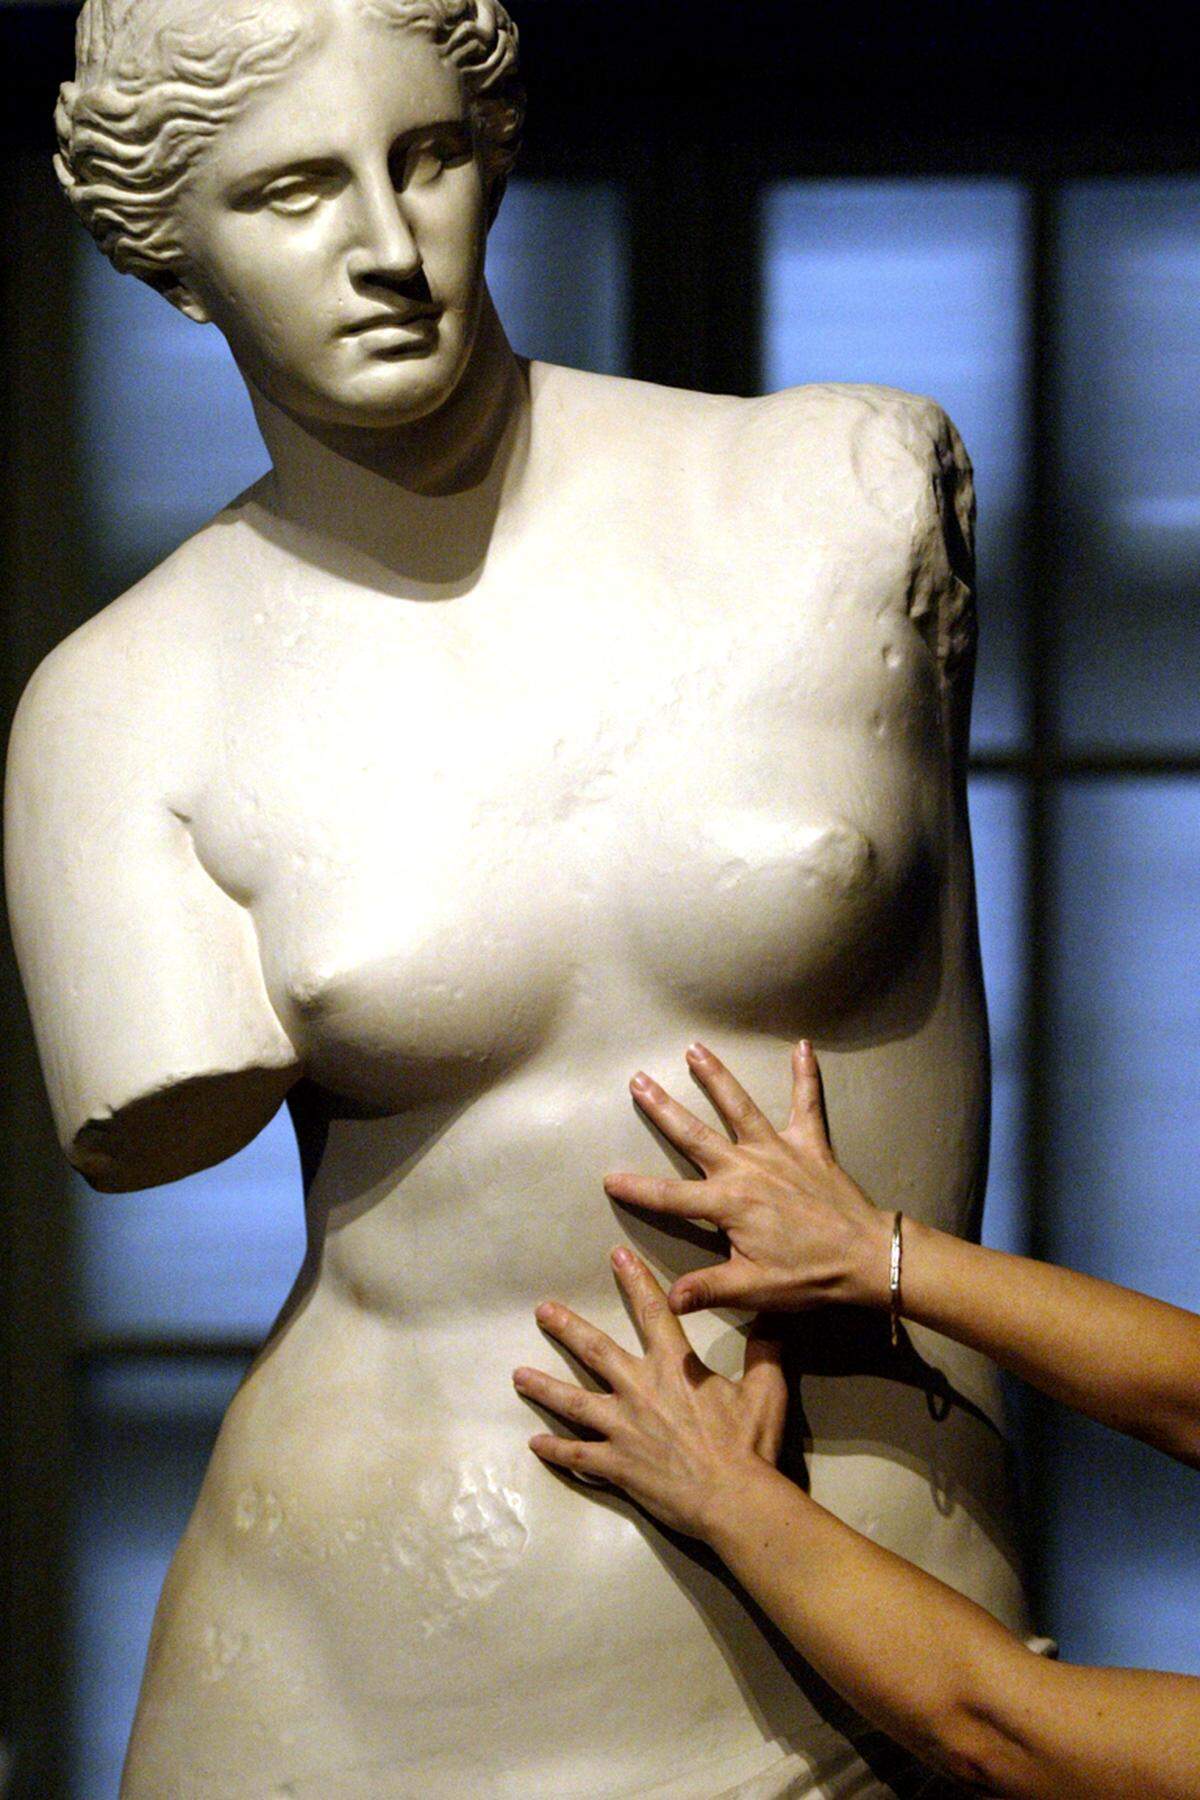 In der griechischen Antike erkannte man die wohlhabende Oberschicht an ihren üppigen Formen. Ideale Frauenfiguren wie die Venus von Milo waren dennoch von ausgewogener Optik. Das Becken durfte aber gern ein bisschen kräftiger sein.